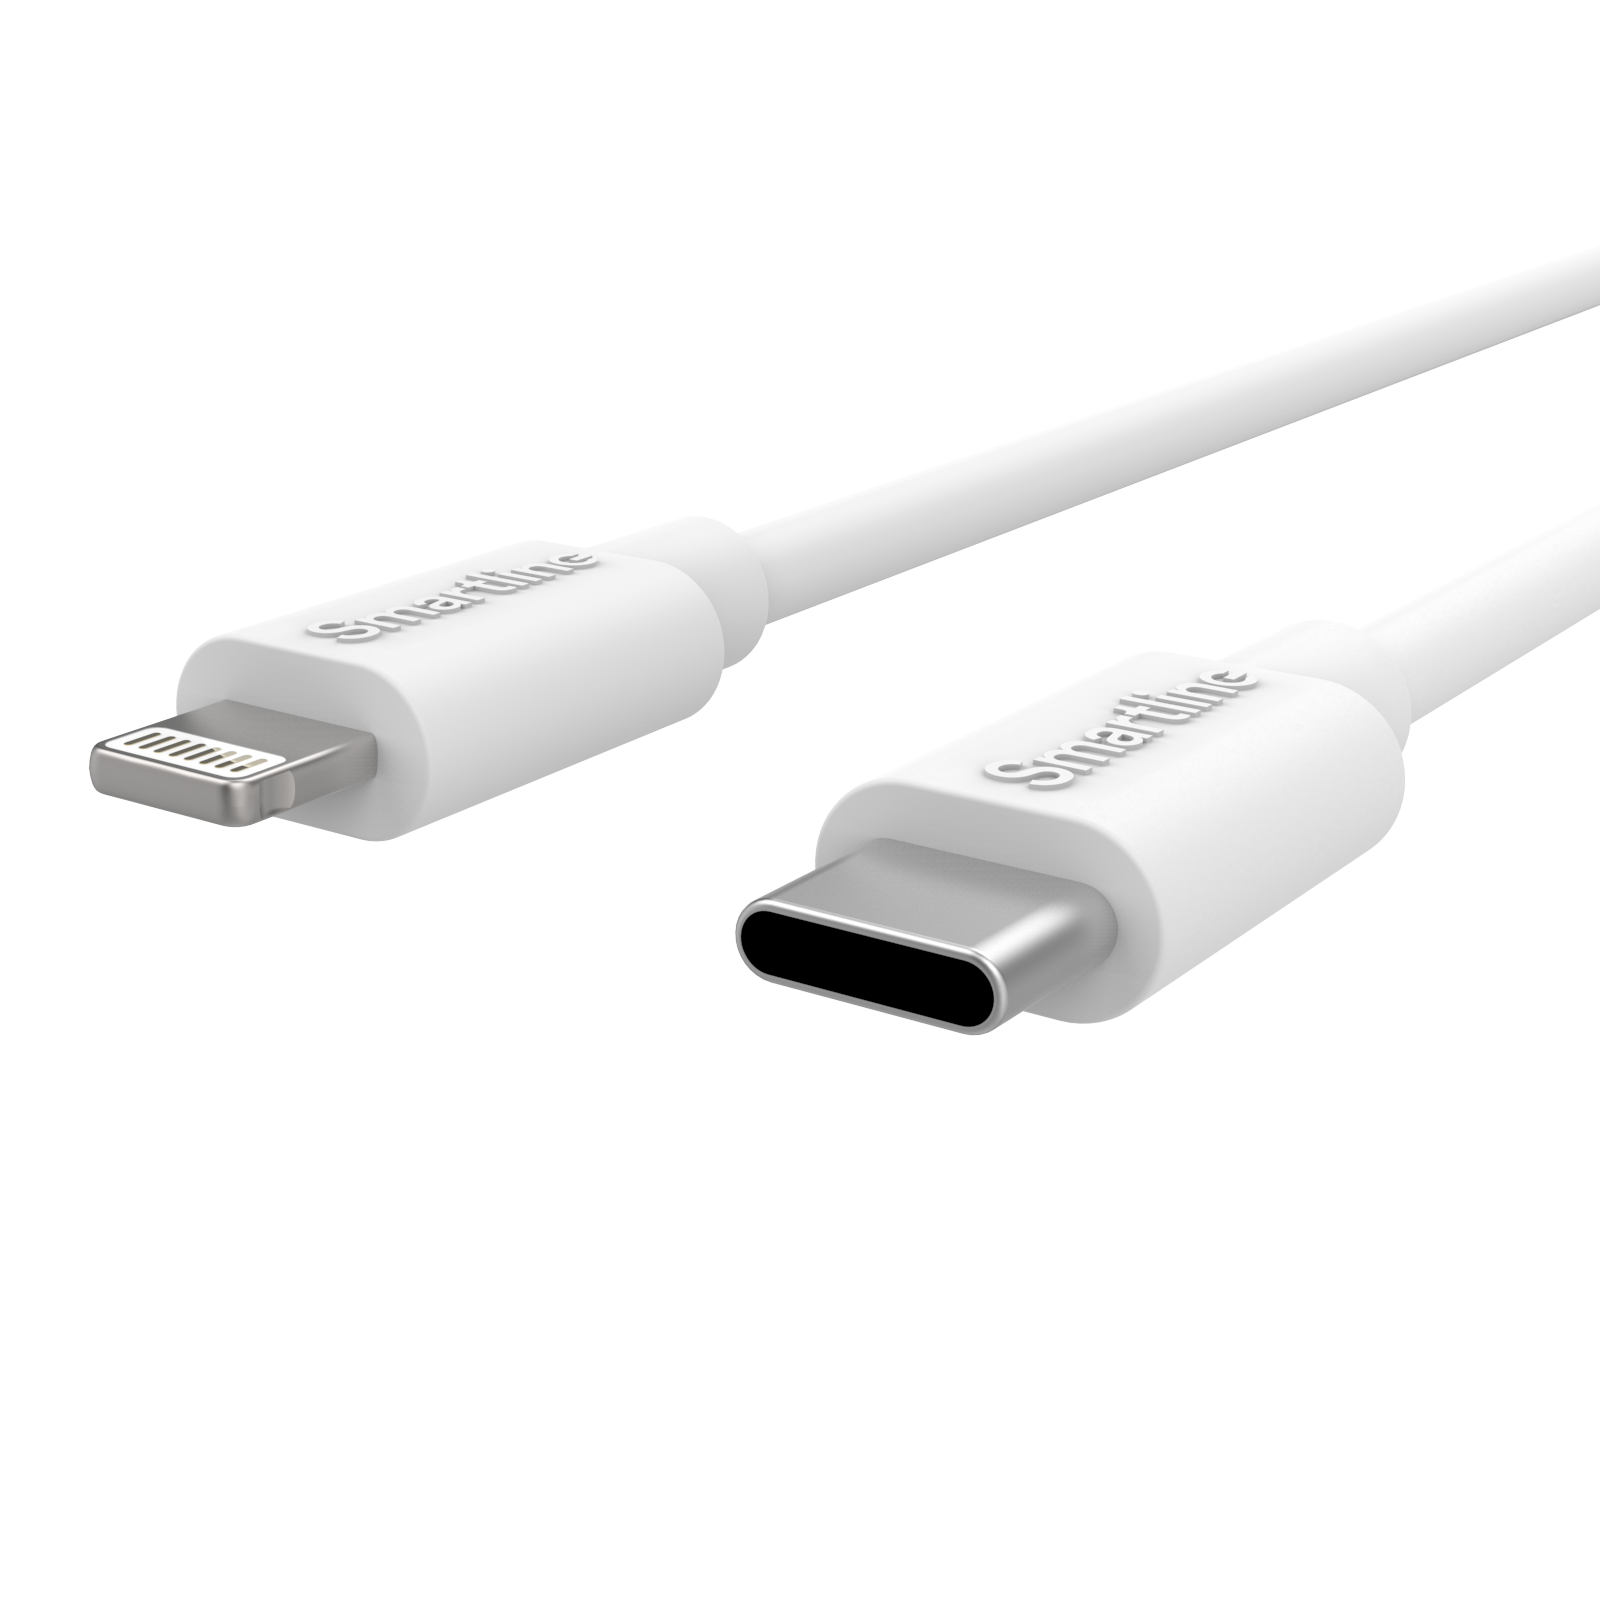 Zwei-in-eins-Ladegerät für iPhone 12/12 Pro - 2m-Kabel und Wandladegerät - Smartline